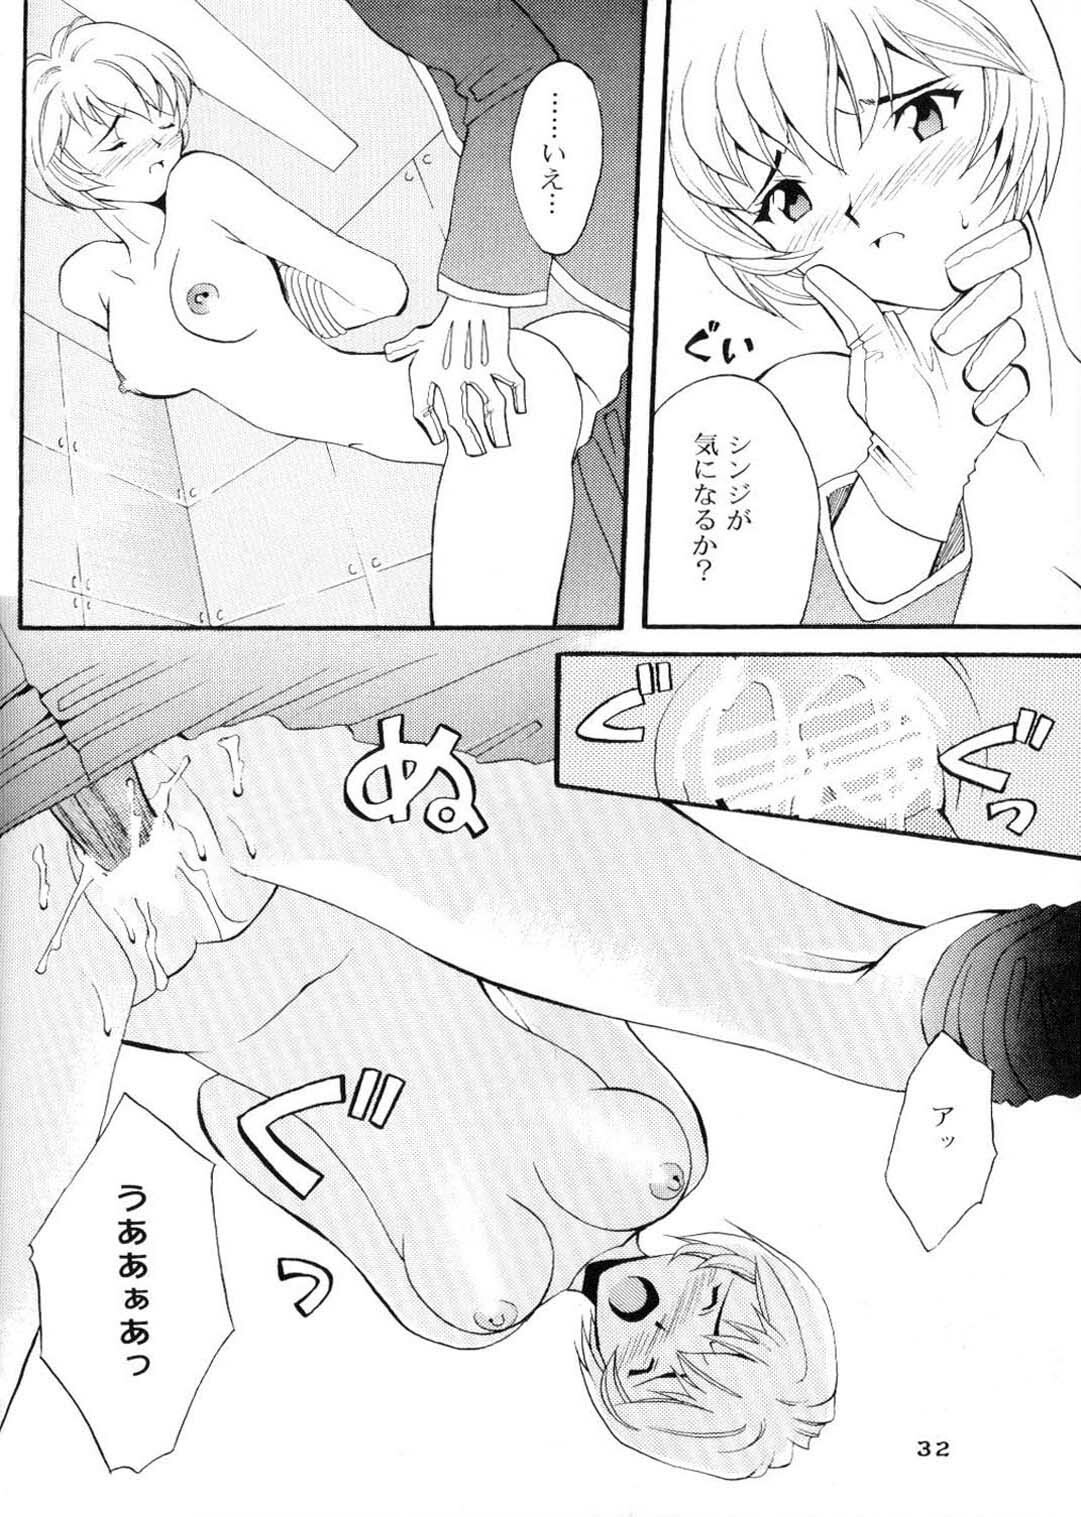 (CR20) [HK Syndicate (Hanazawa Rena, Kurikara)] Konton Chaos (Neon Genesis Evangelion) page 31 full